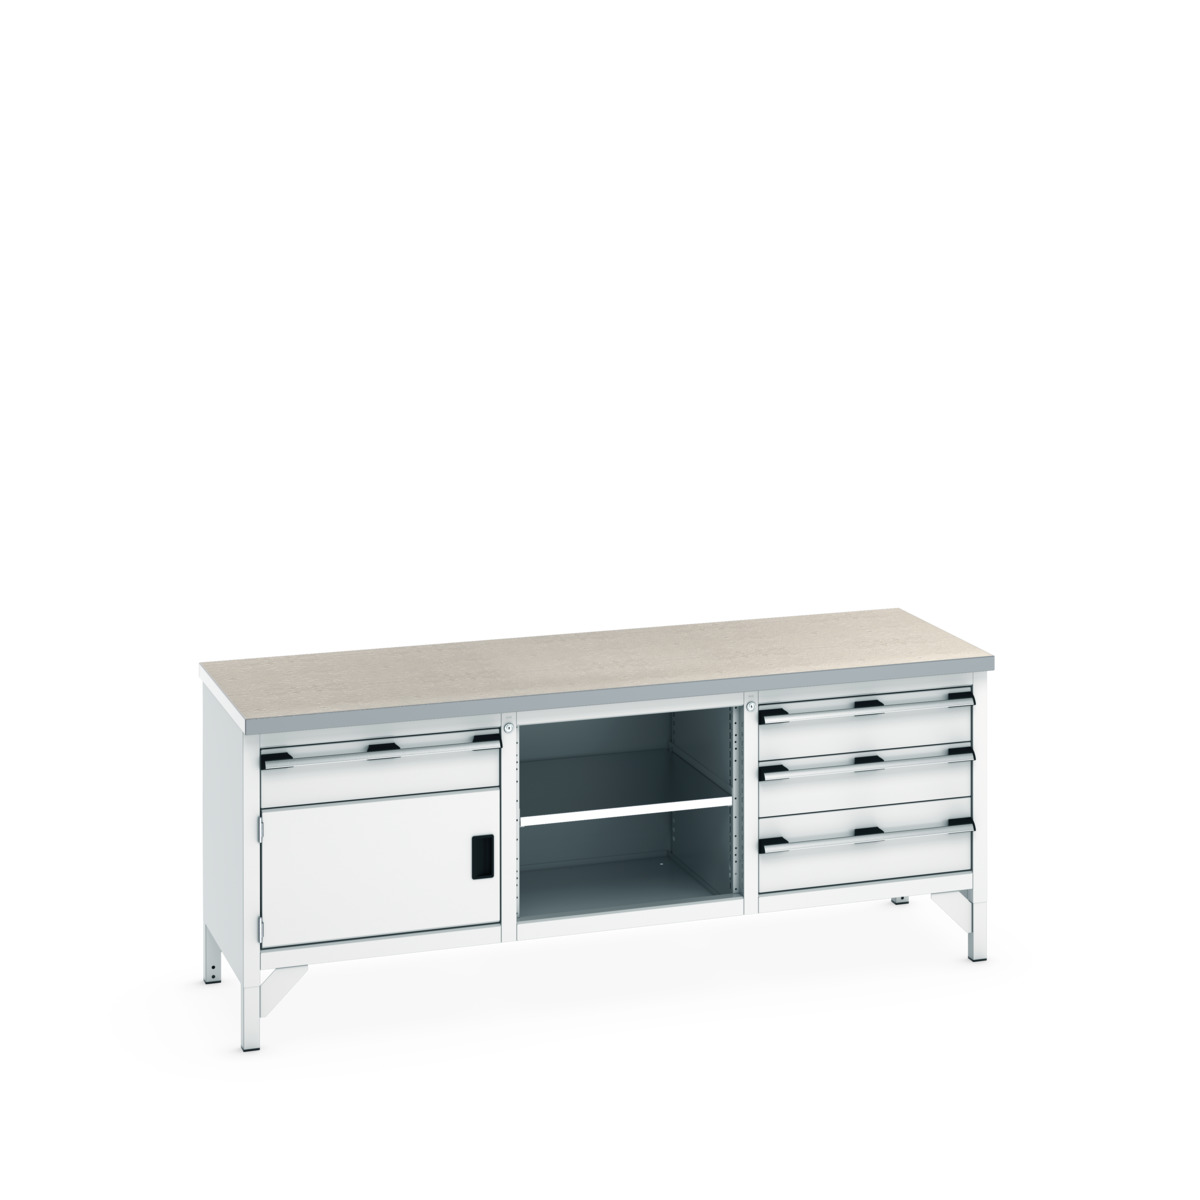 41002060.16V - cubio storage bench (lino)